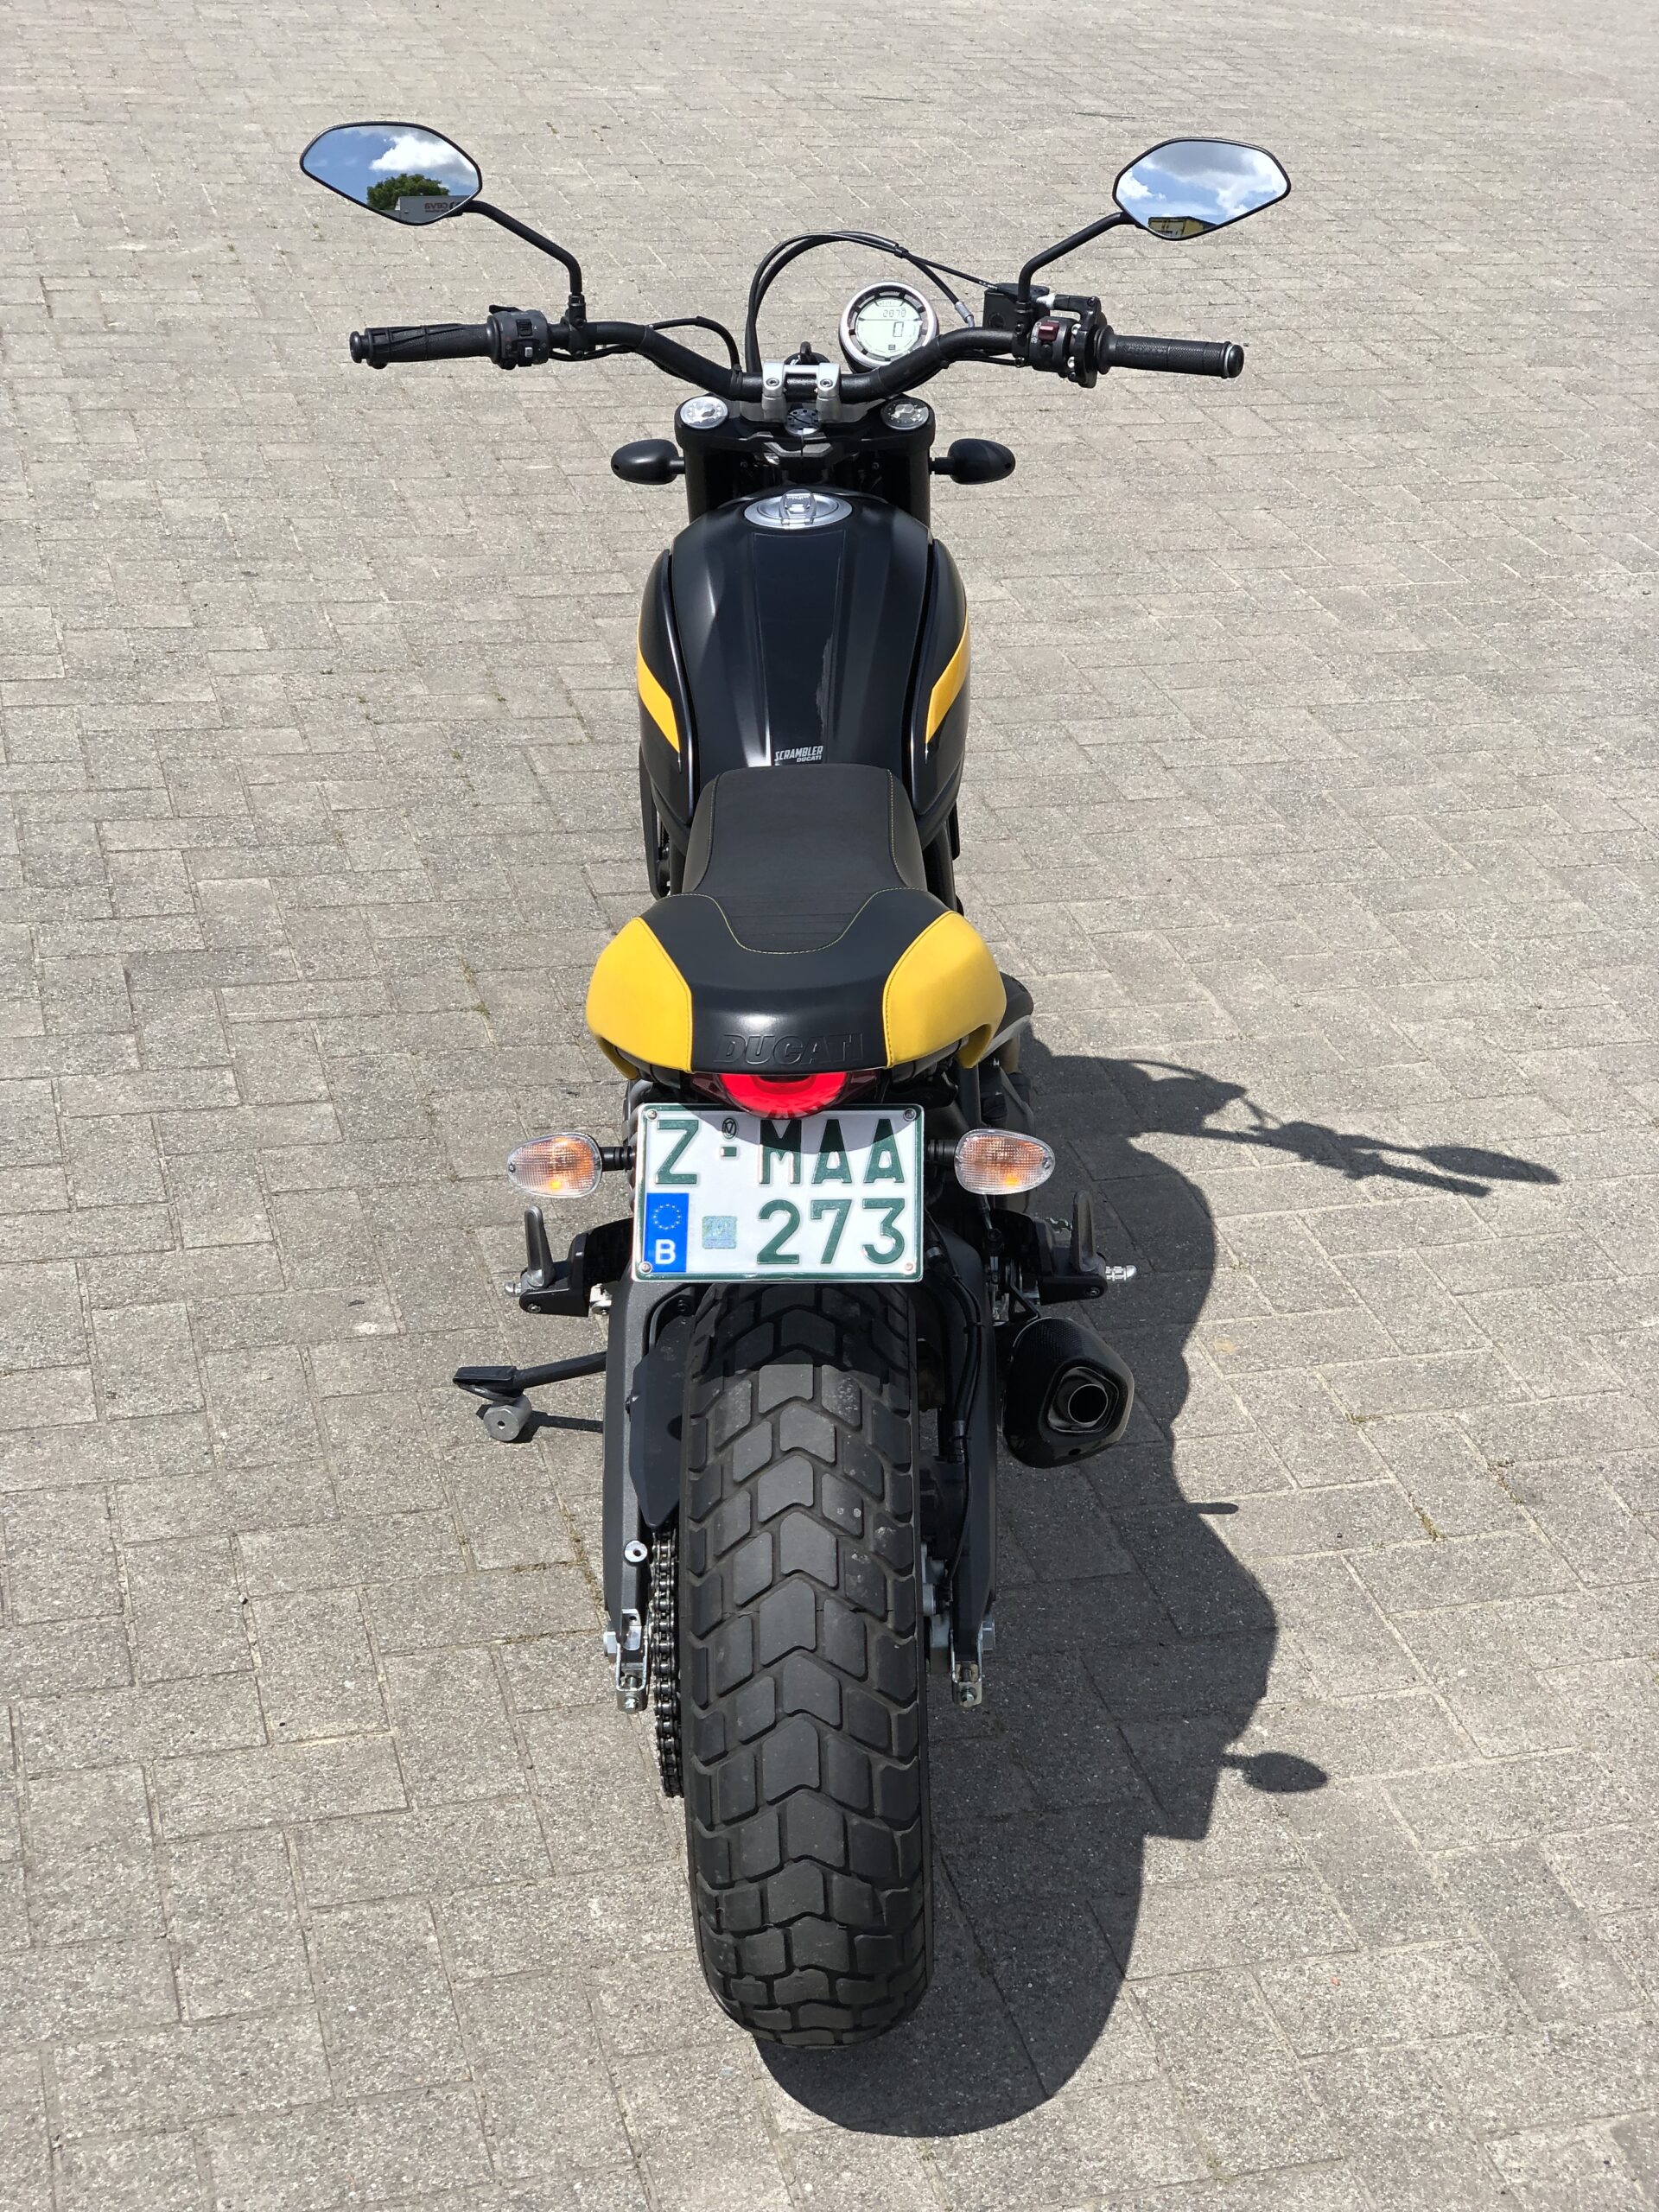 Ducati Scrambler 800 Full Trattle ABS 2878 Km Bouwjaar 2015